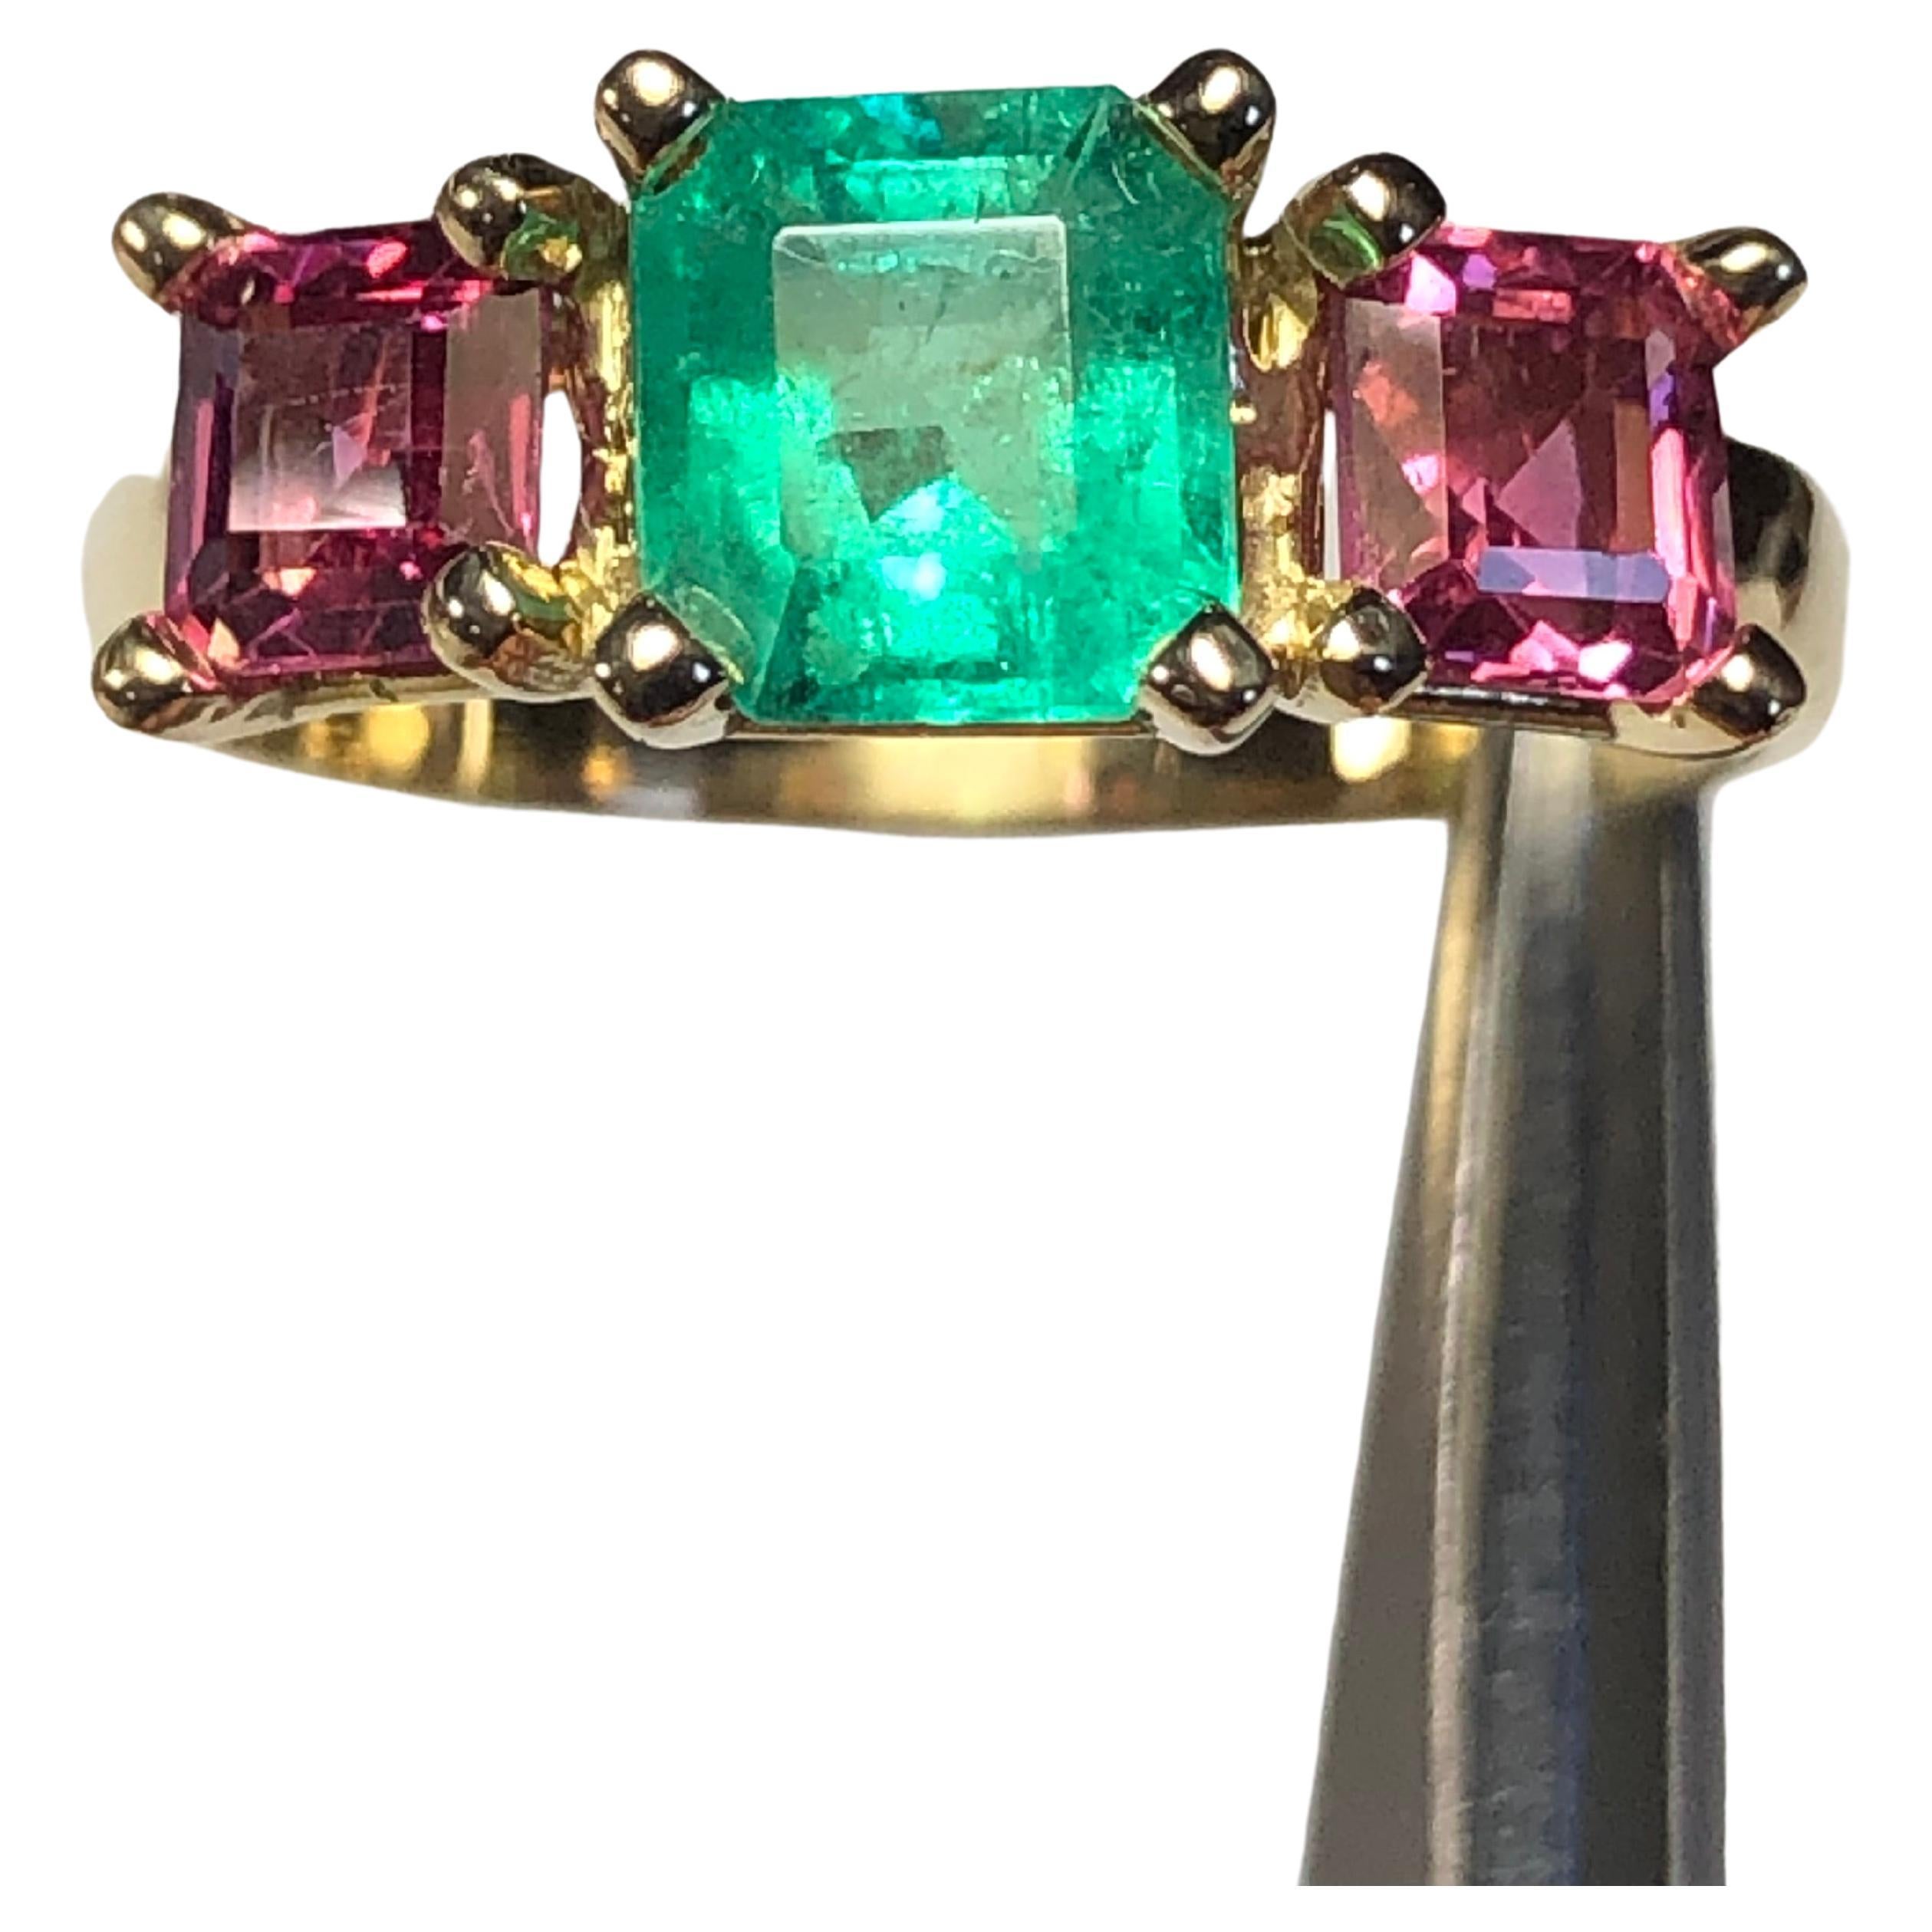 Dieser klassische Trilogie-Ring zeigt einen natürlichen mittelgrünen kolumbianischen Smaragd, flankiert von einem Paar natürlicher rosa Mahenge-Spinelle im Quadratschliff. Fassung aus 18 Karat Gelbgold. Sehr klassisch und einfach für den Alltag zu